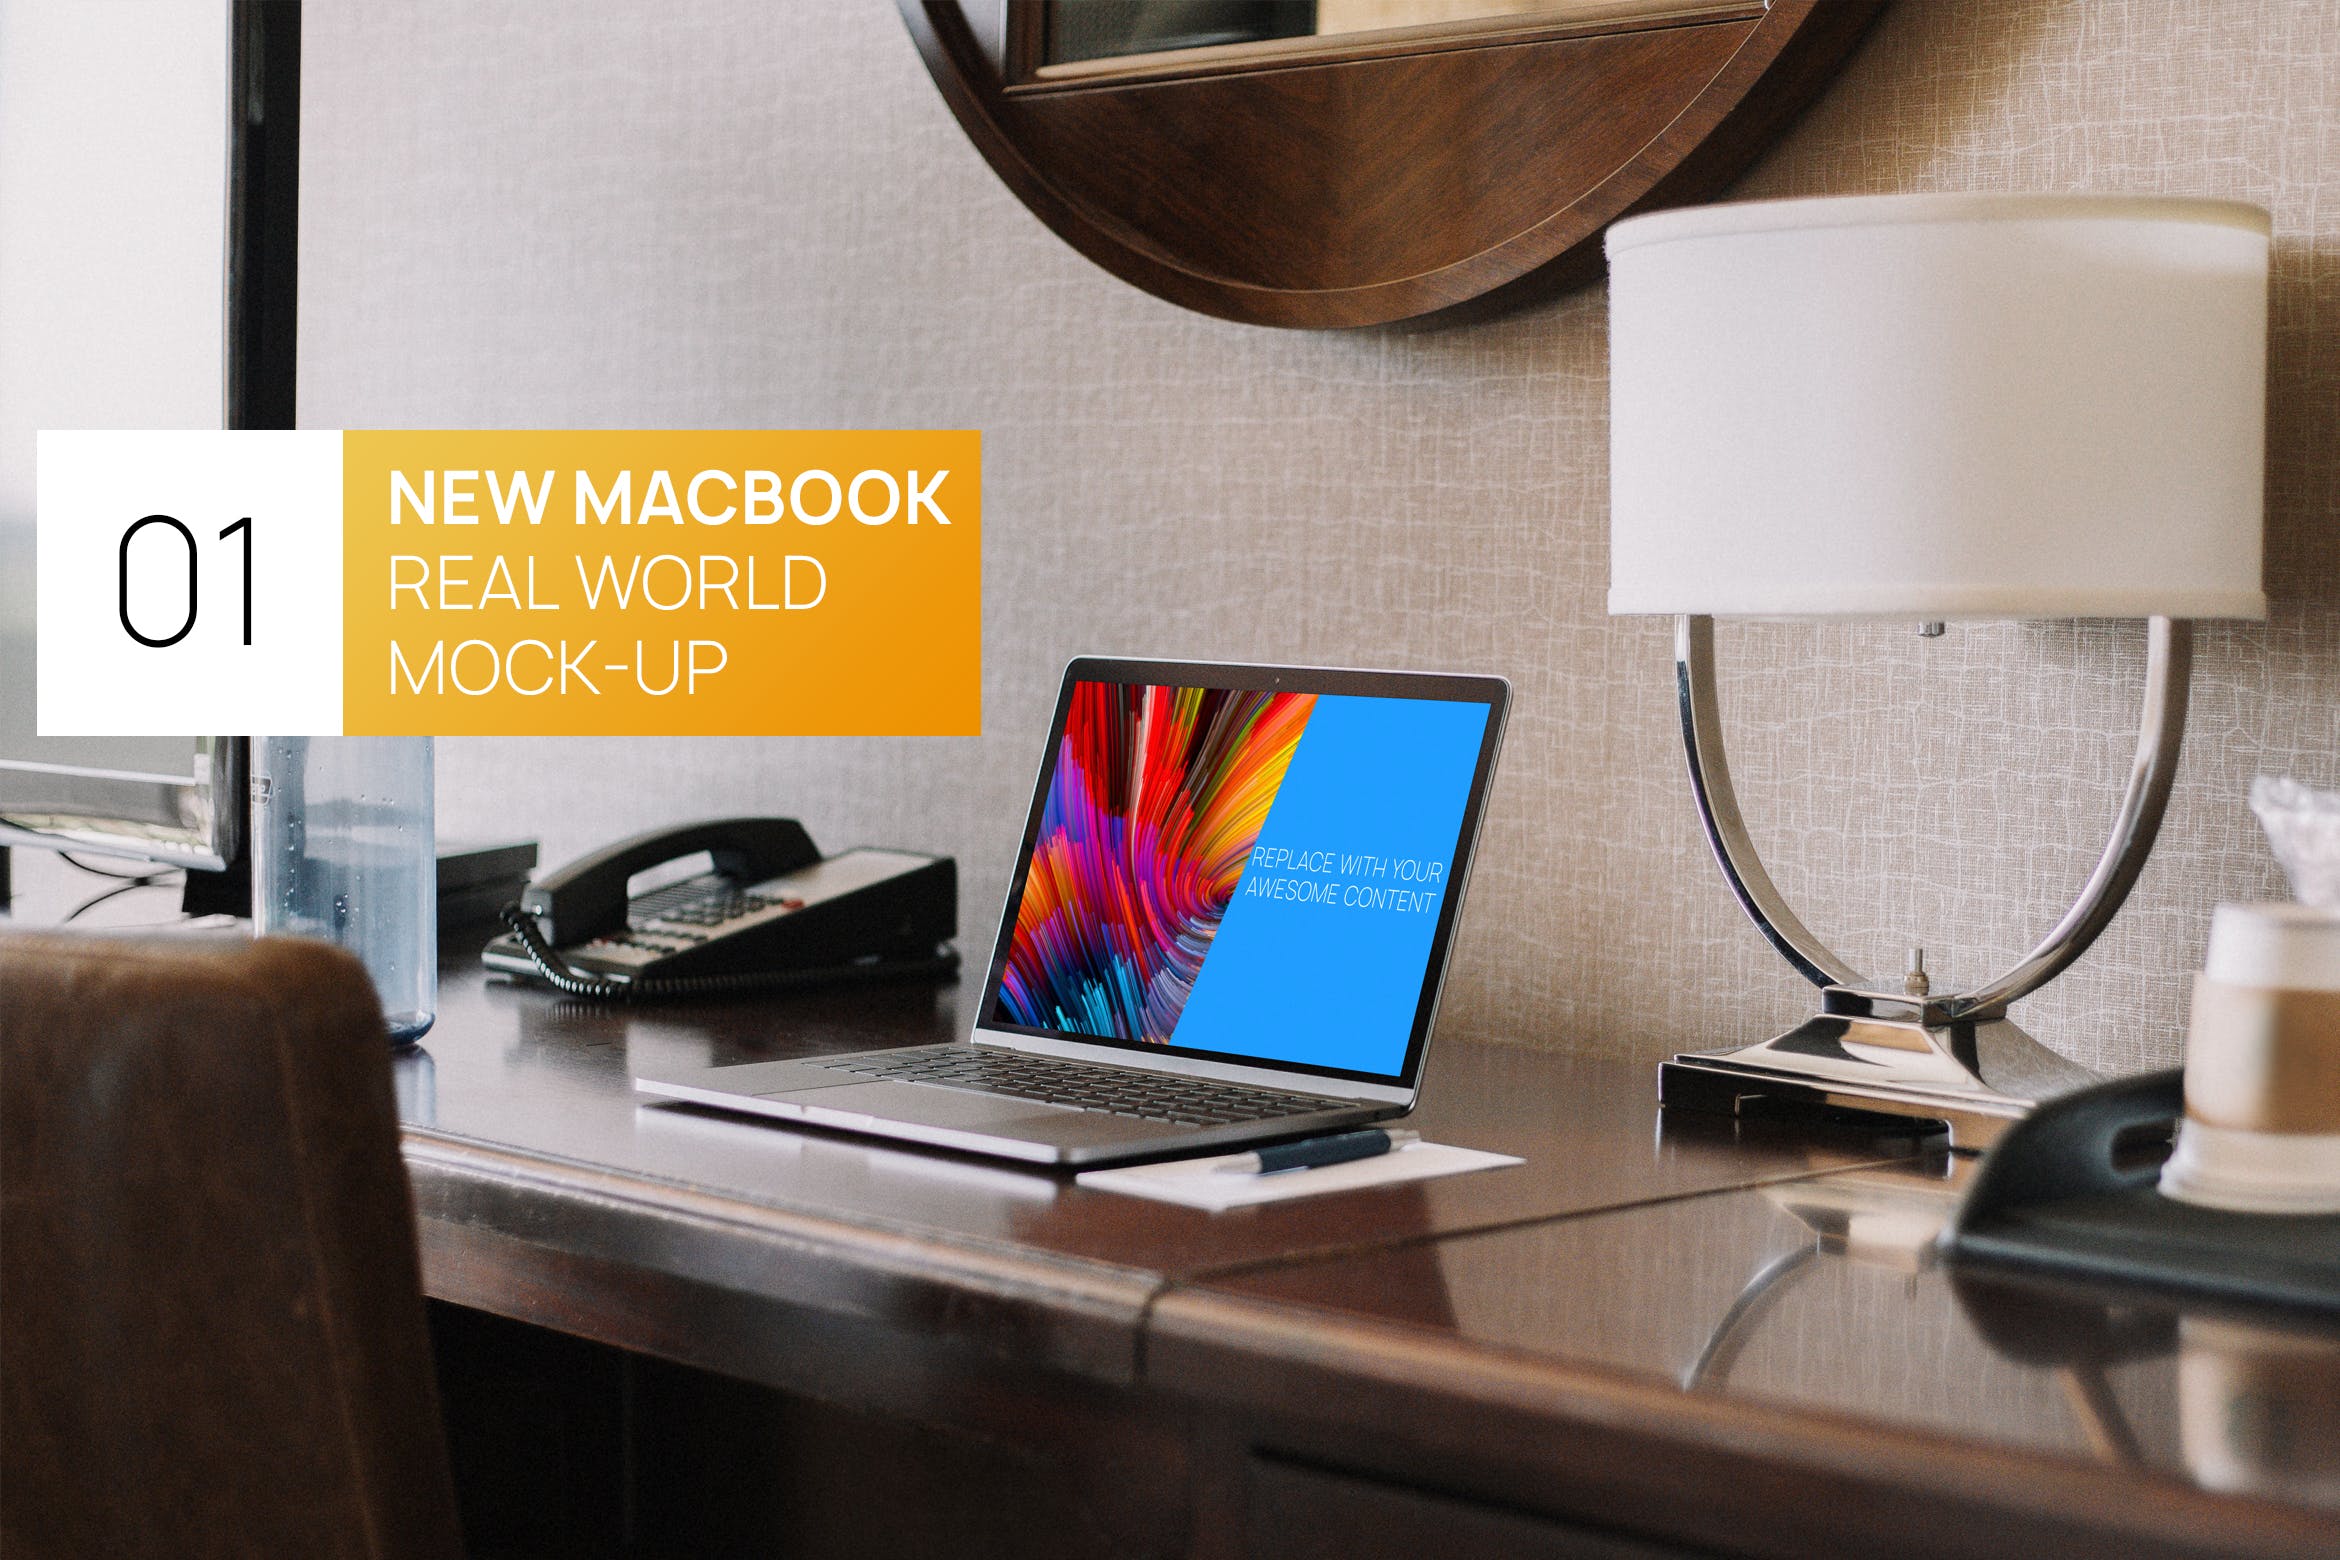 居家卧室桌面场景13寸MacBook电脑16图库精选样机 New Macbook 13 Interior Real World Photo Mock-up插图